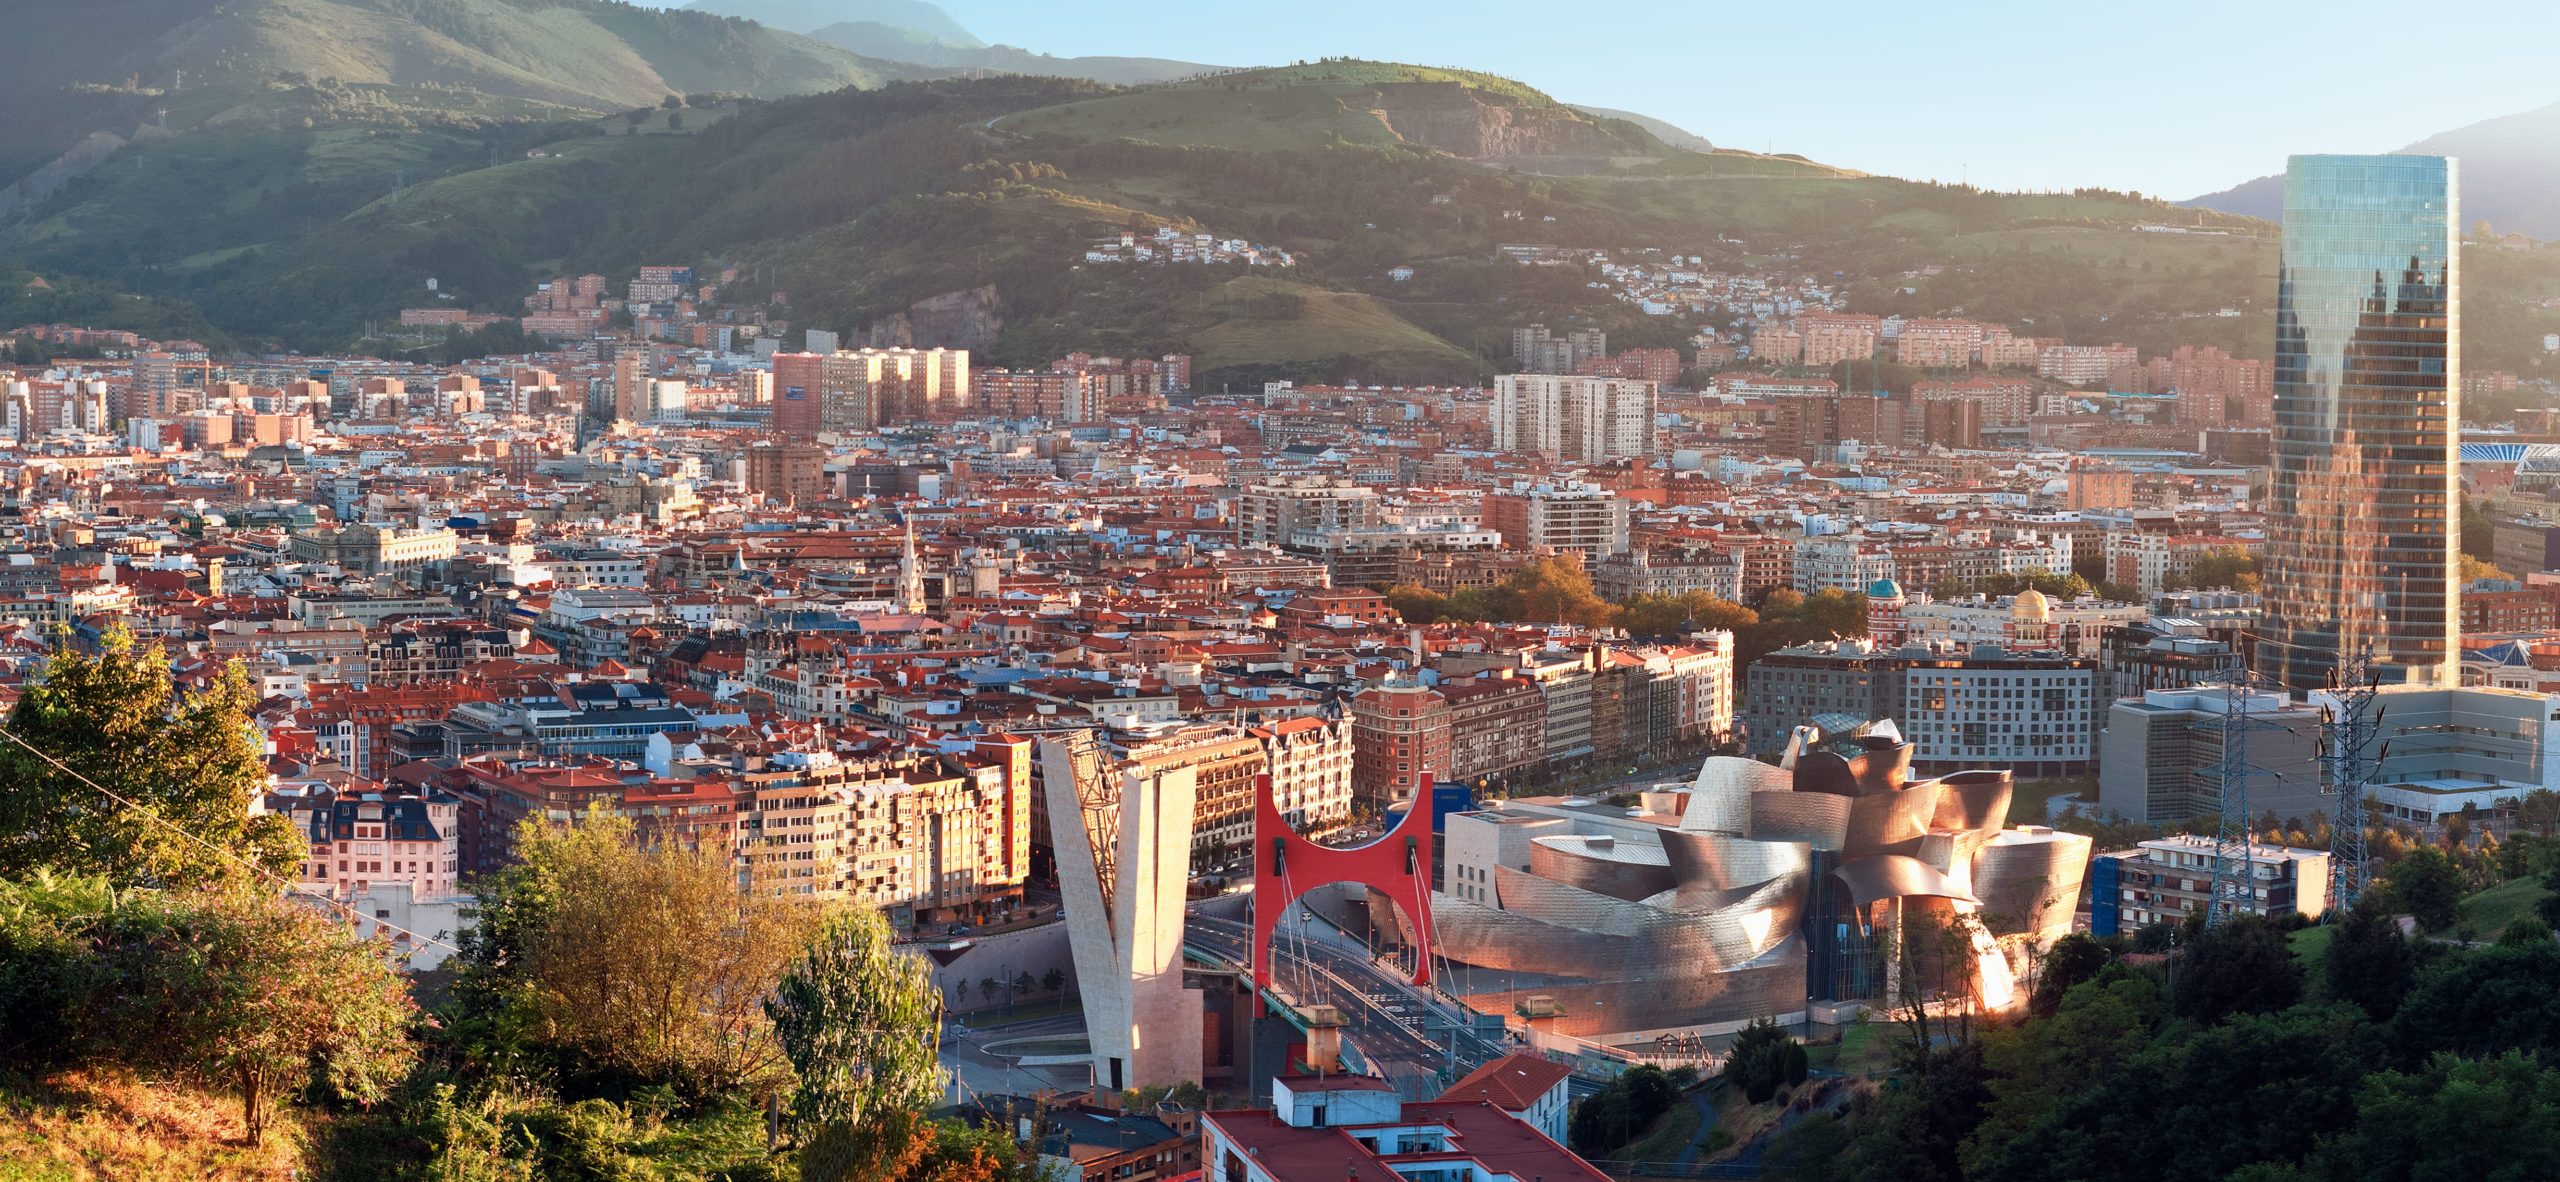 El alquiler en Bilbao baja respecto al resto de España | La Casa Agency